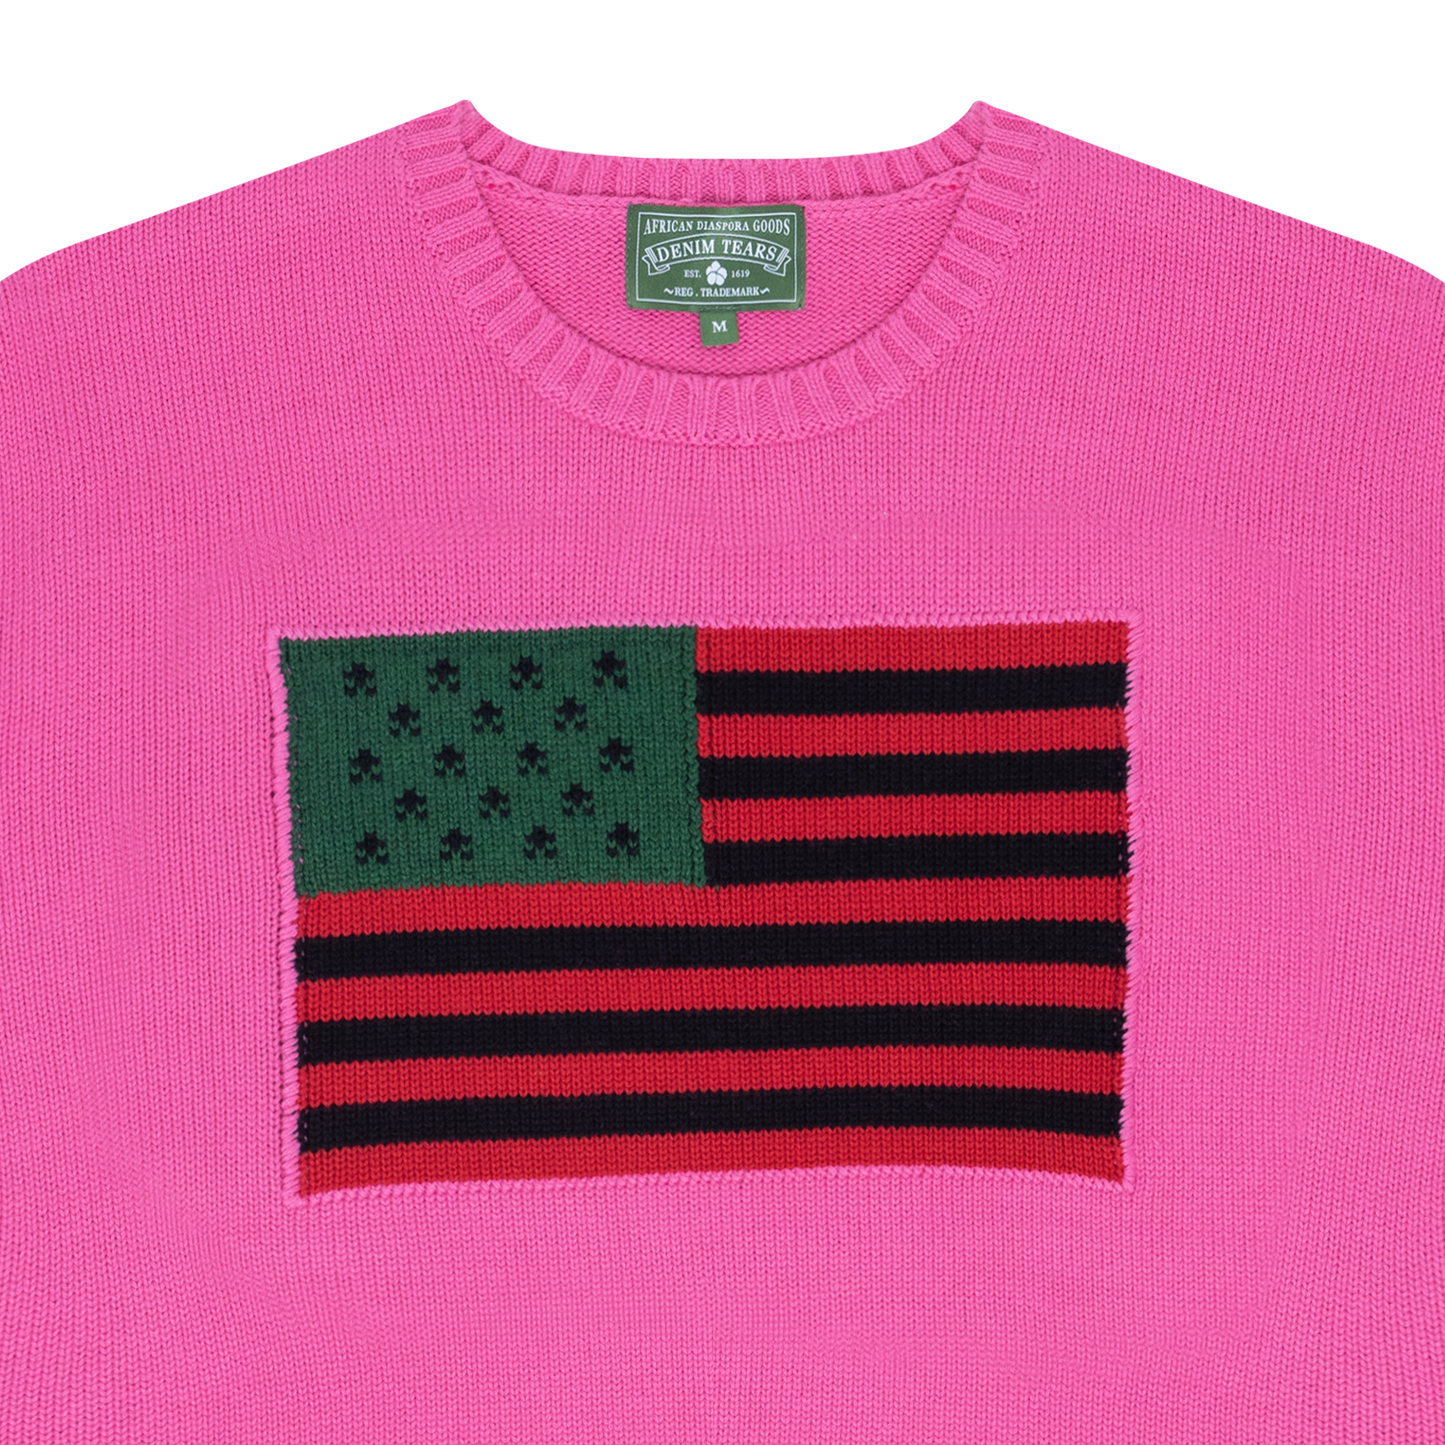 'Tyson Beckford Sweater' PINK